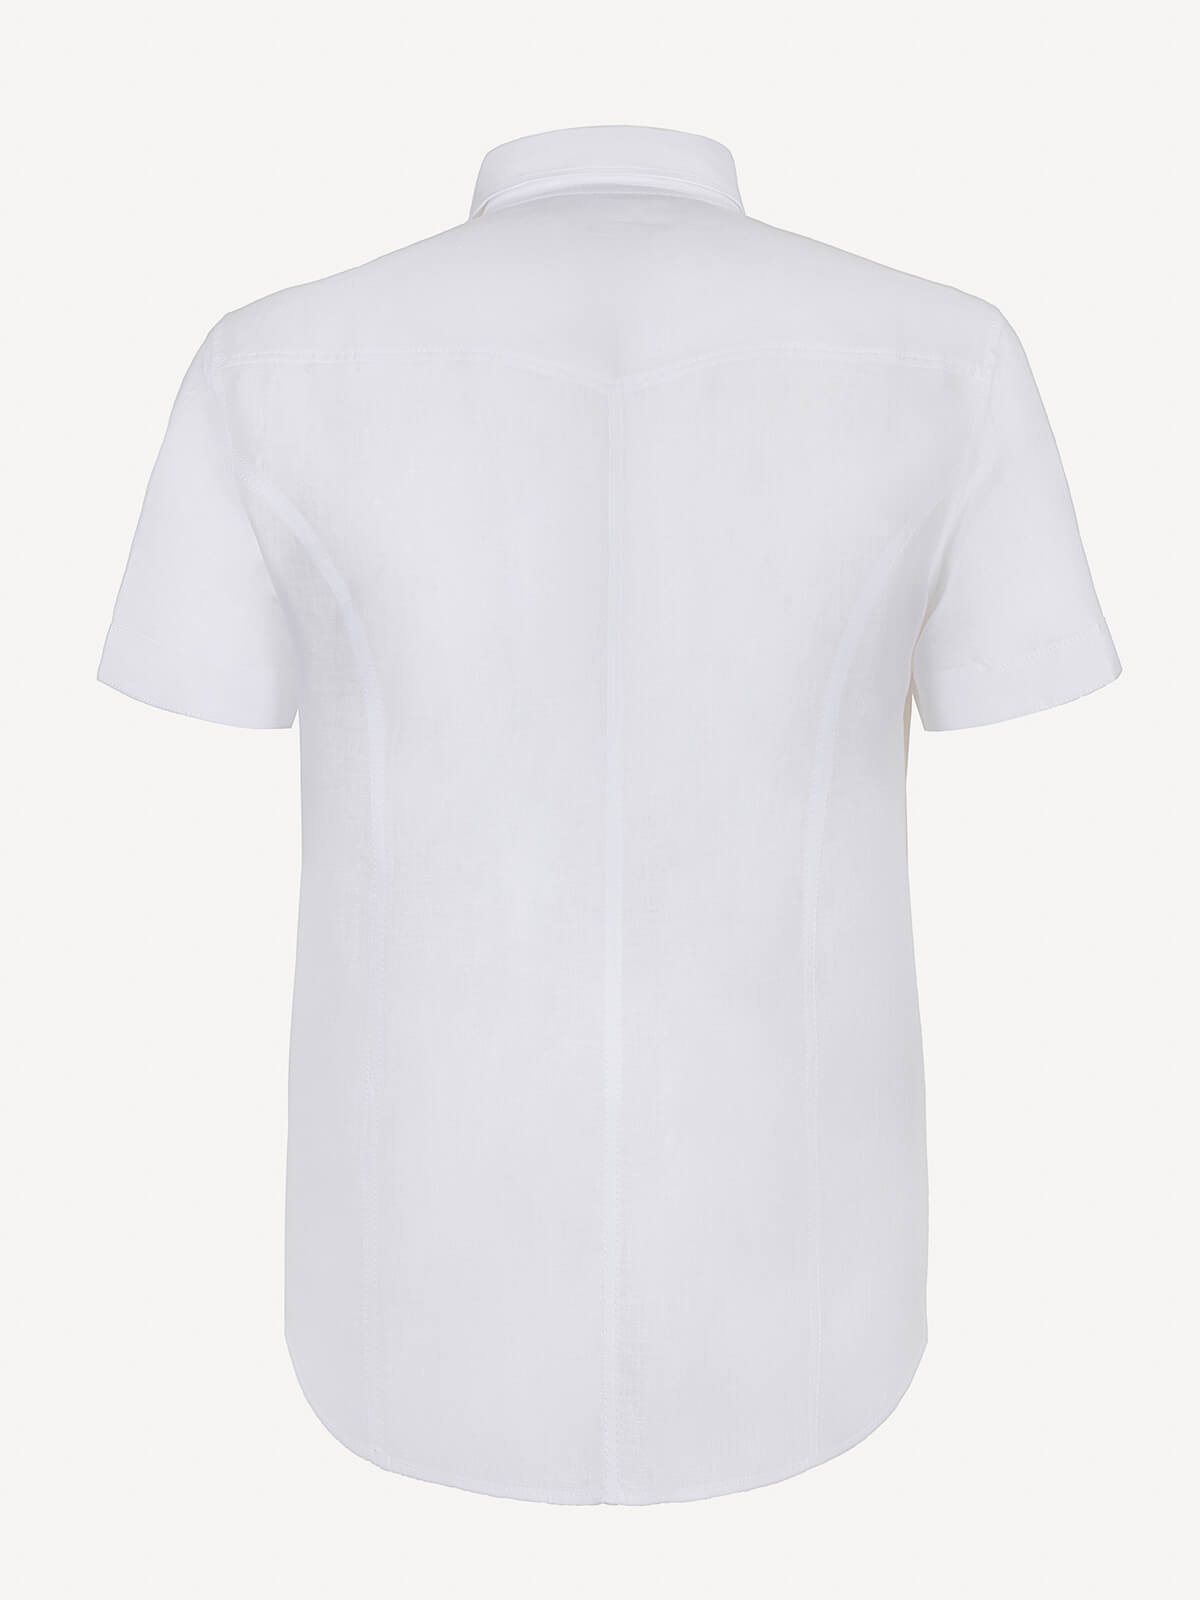 Camicia Denim back white color 100% Capri